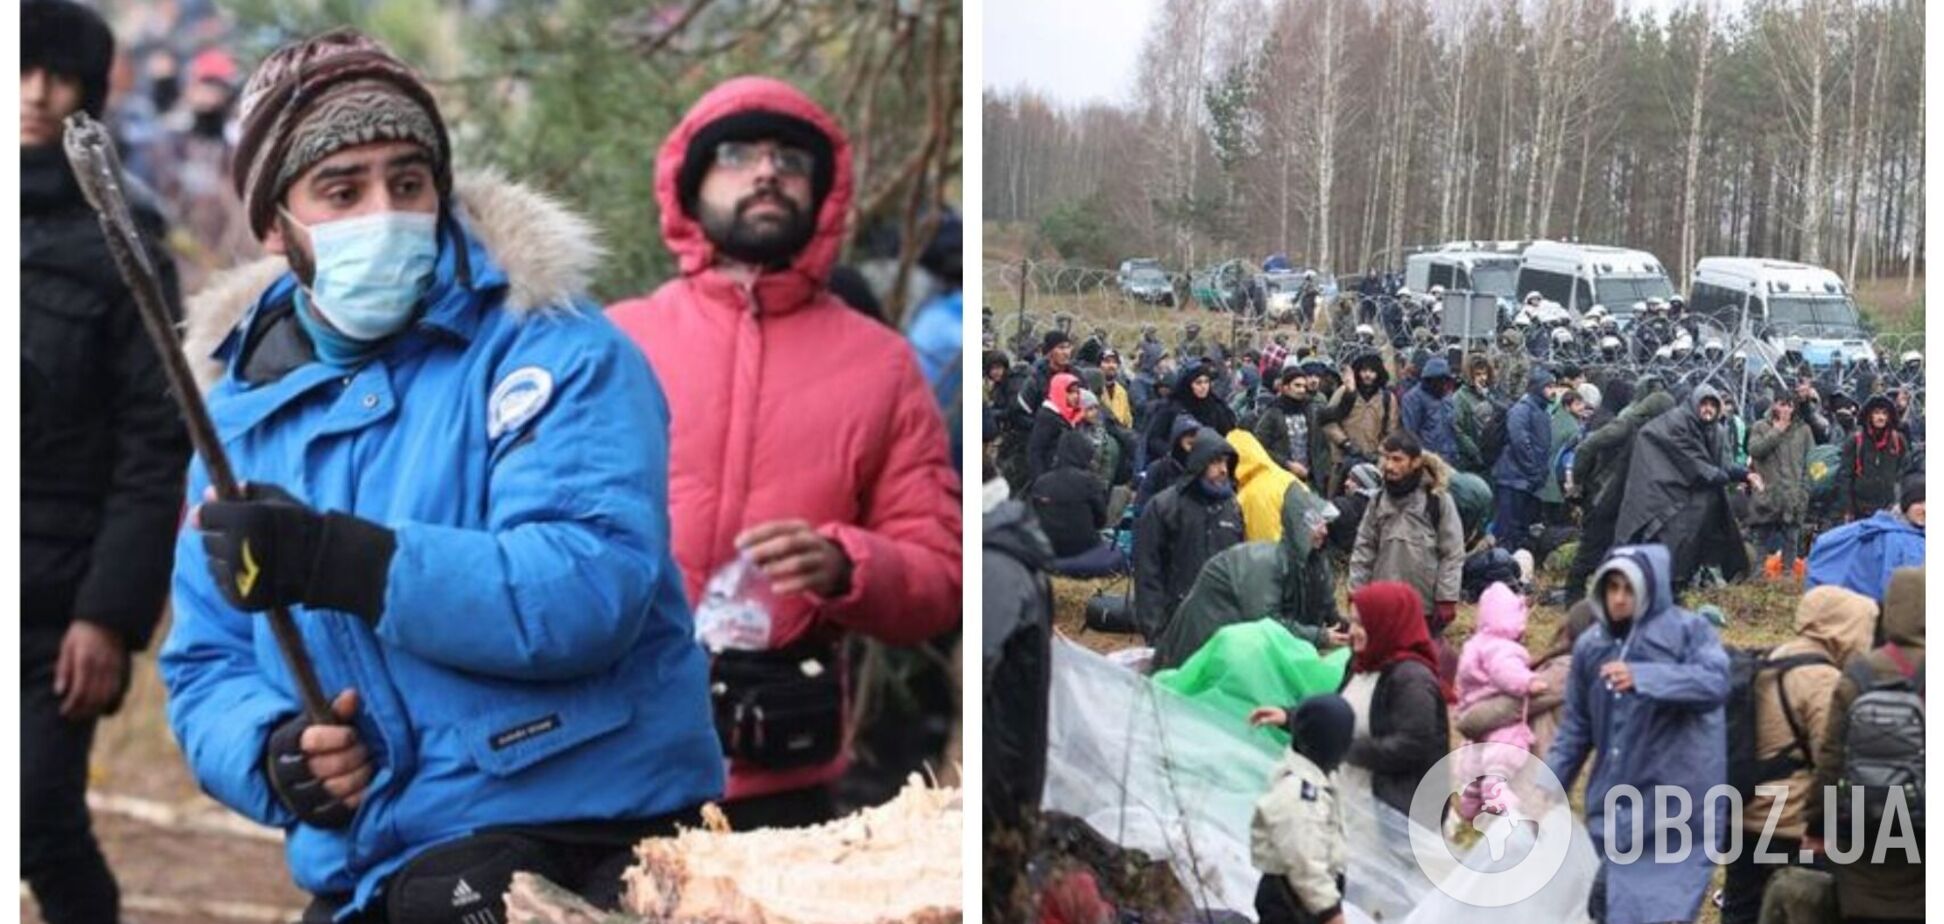 Носять куртки за $1000? У мережі розгорілися суперечки навколо біженців, які штурмують польський кордон